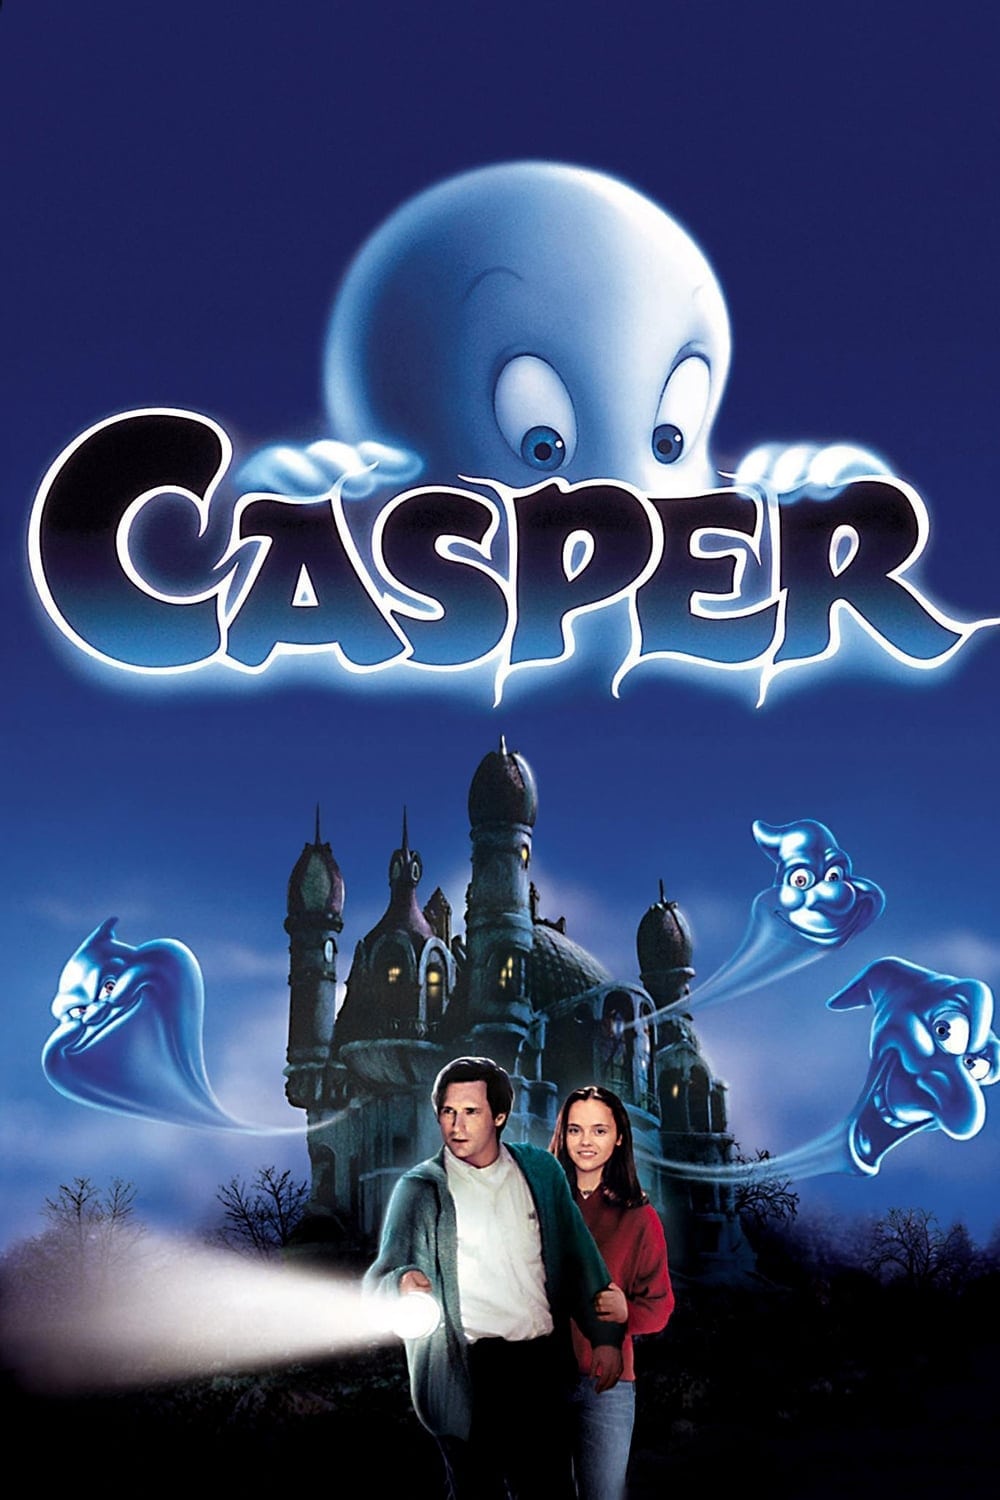 Caratula de Casper (Casper) 